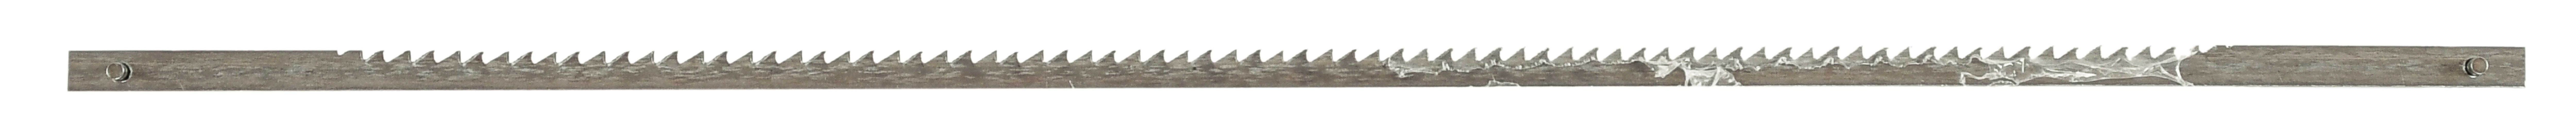 Dekupiersägeblätter für Holz, 162 mm